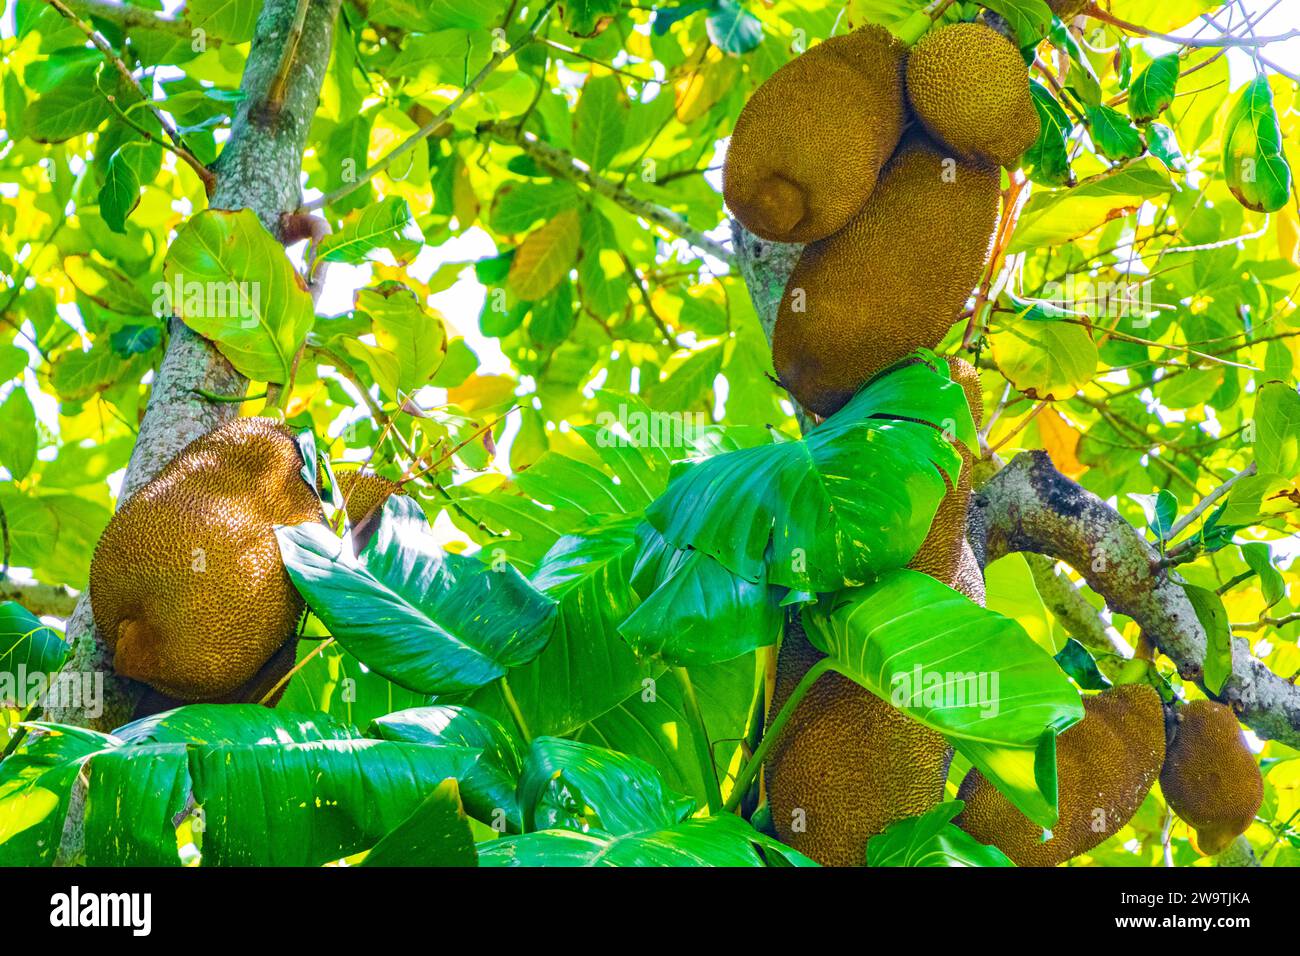 Jackfrucht Artocarpus Heterophyllus Wächst Auf Jack Tree In Der Natur Von Rio De Janeiro Brasilien. Stockfoto